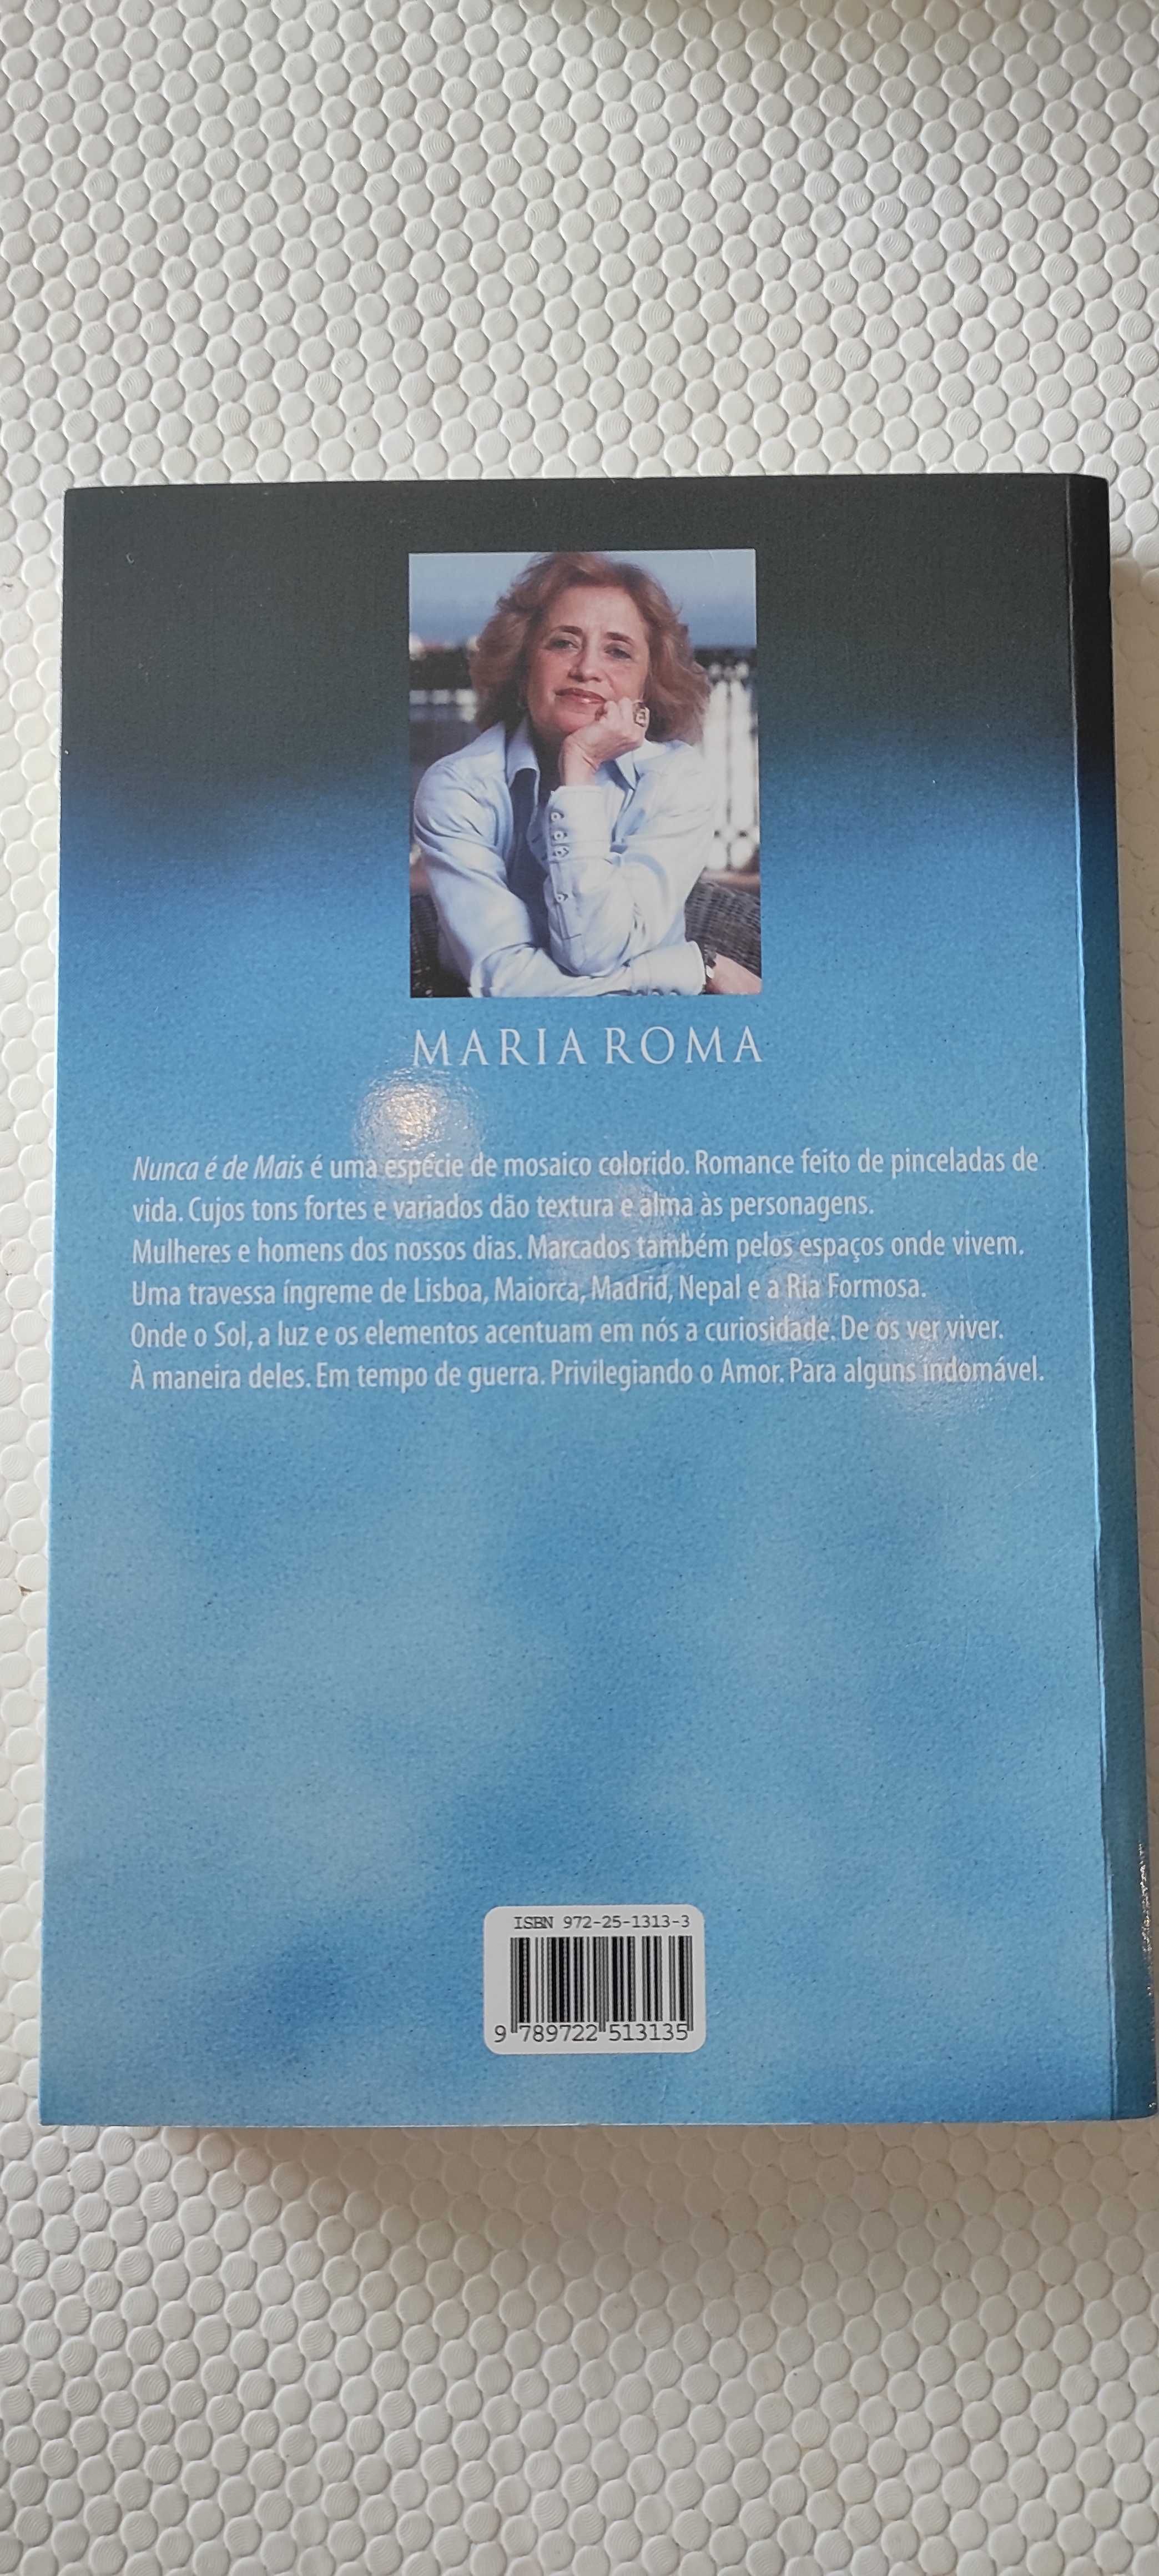 Livro "Nunca é De Mais" de Maria Roma